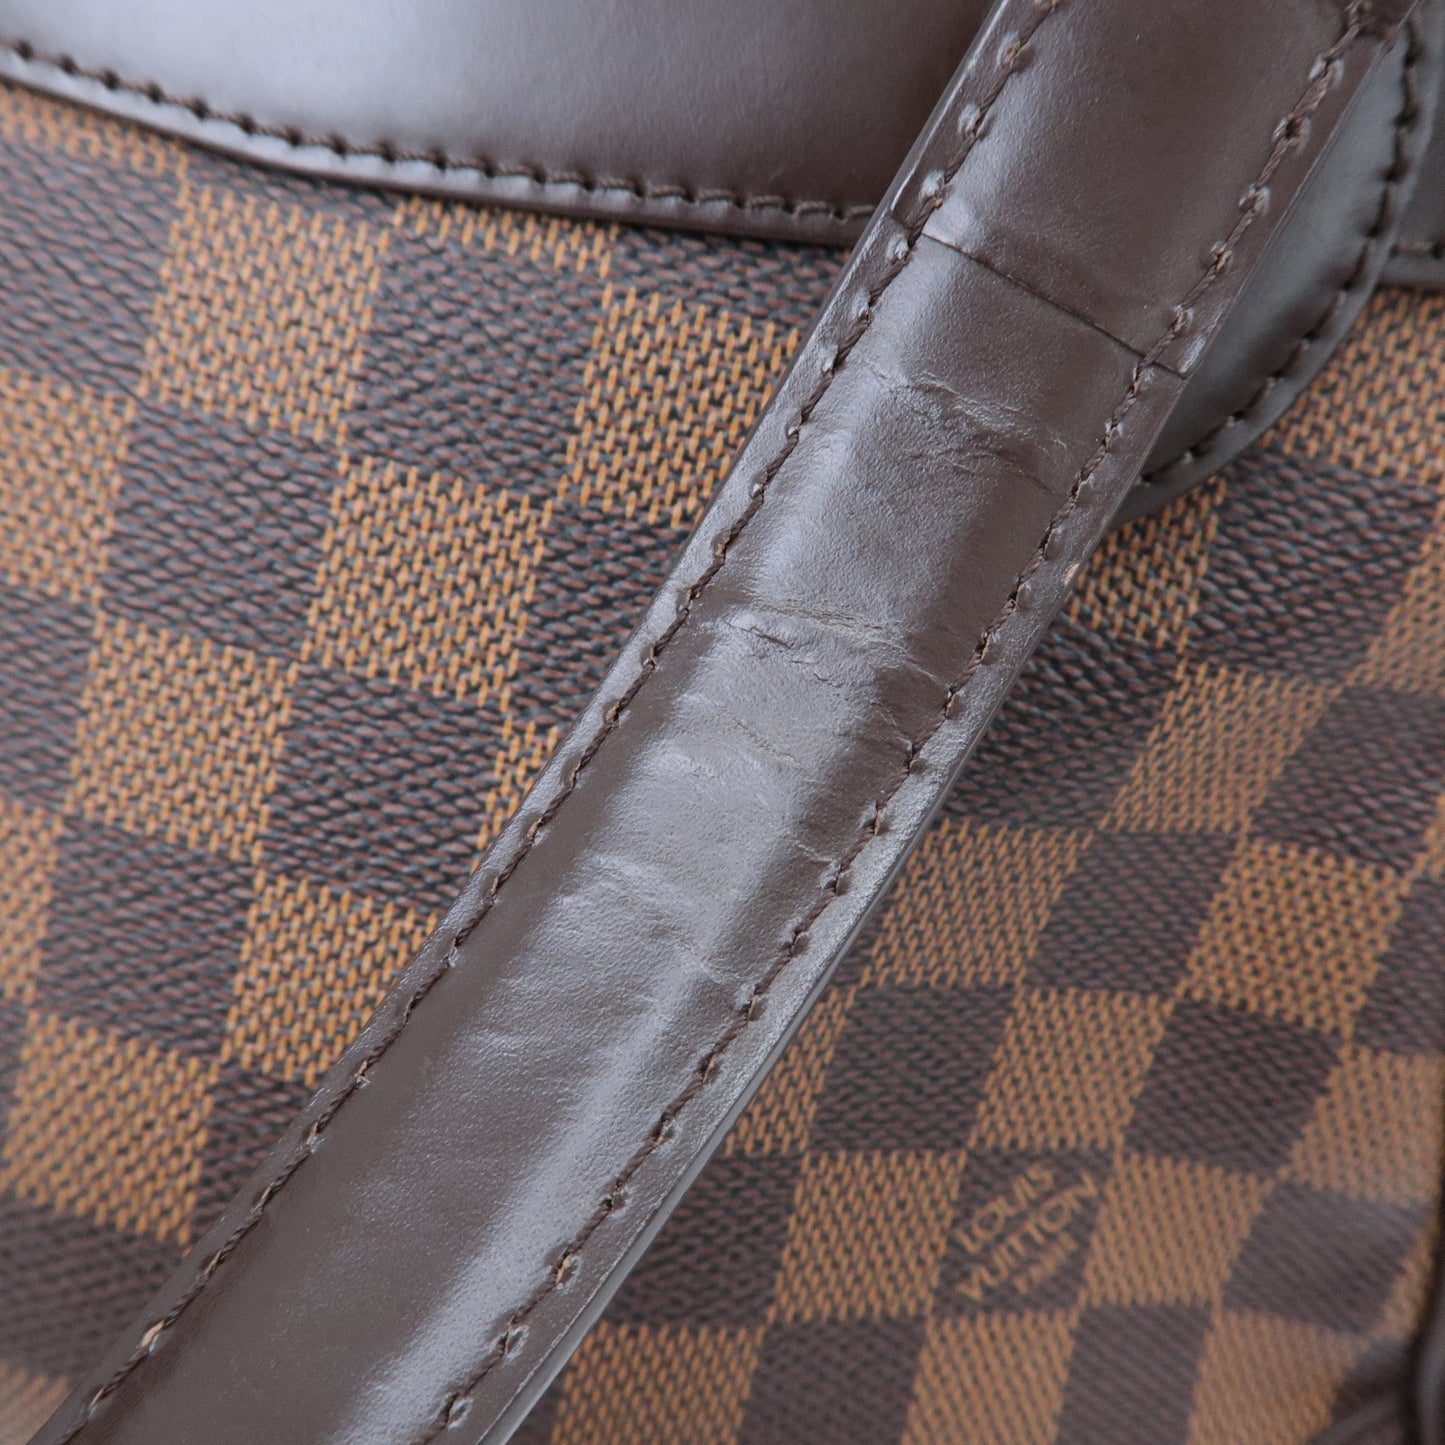 Louis Vuitton Damier Ebene Verona PM Hand Bag Brown N41117